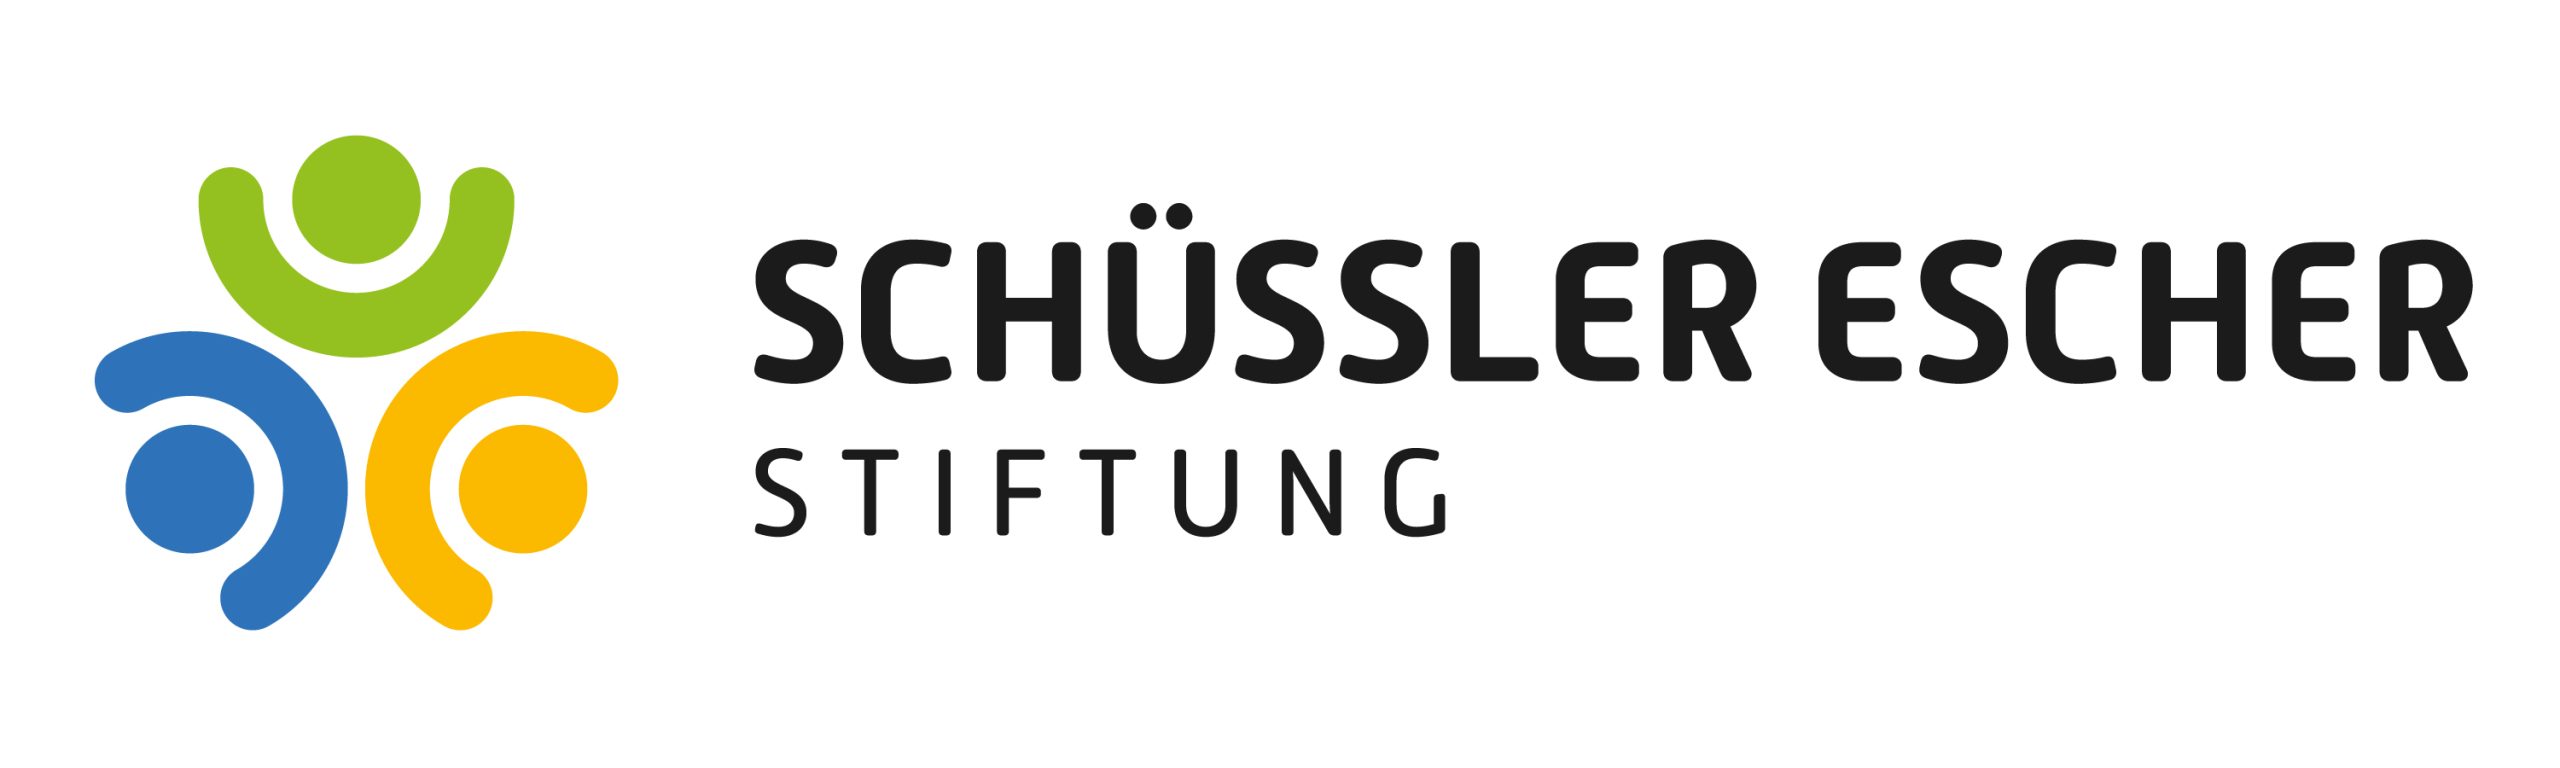 Das Bild zeigt das Logo der Schüssler Escher Stiftung.